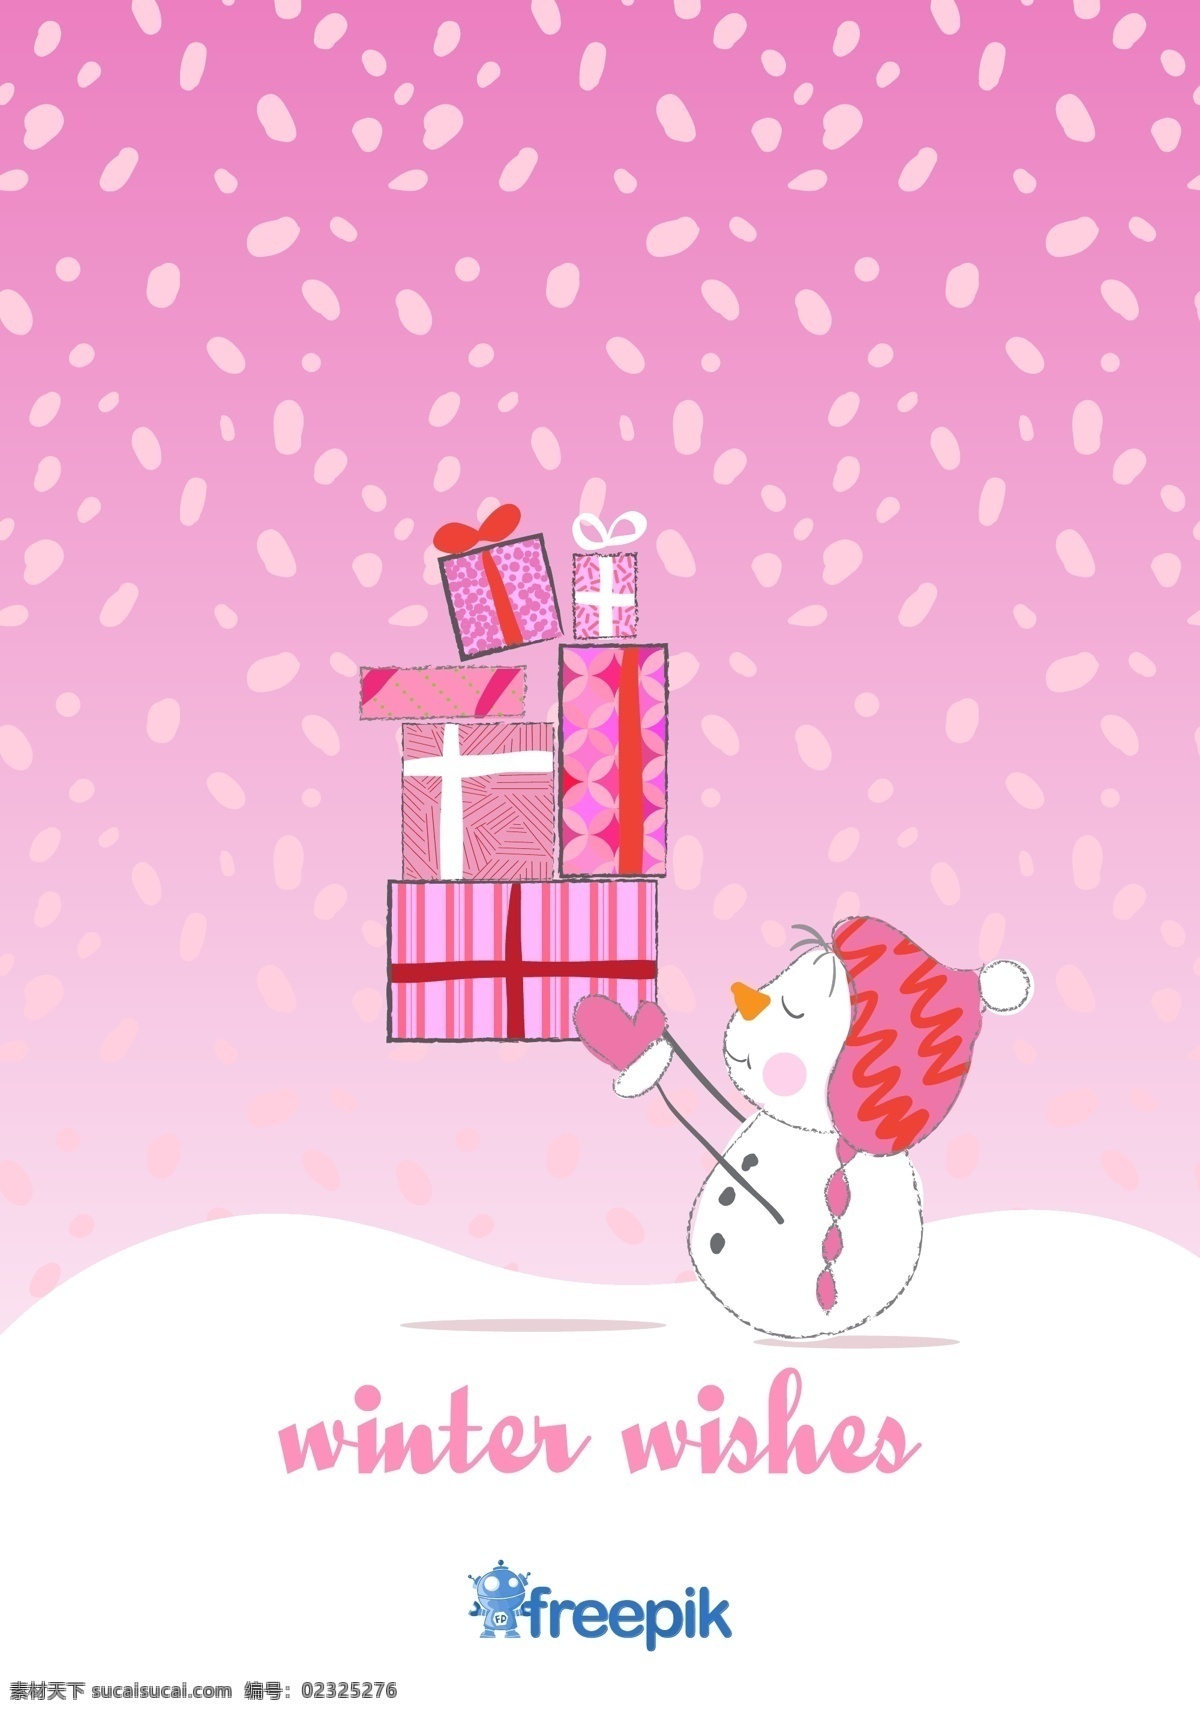 圣诞 雪人 卡片 幸福 粉红色 背景 圣诞节 手卡 男人的礼物 雪 冬天 卡通 手绘的 快乐的 粉红色的 性格 圣诞背景 可爱 圣诞卡 庆祝 帽子 白色